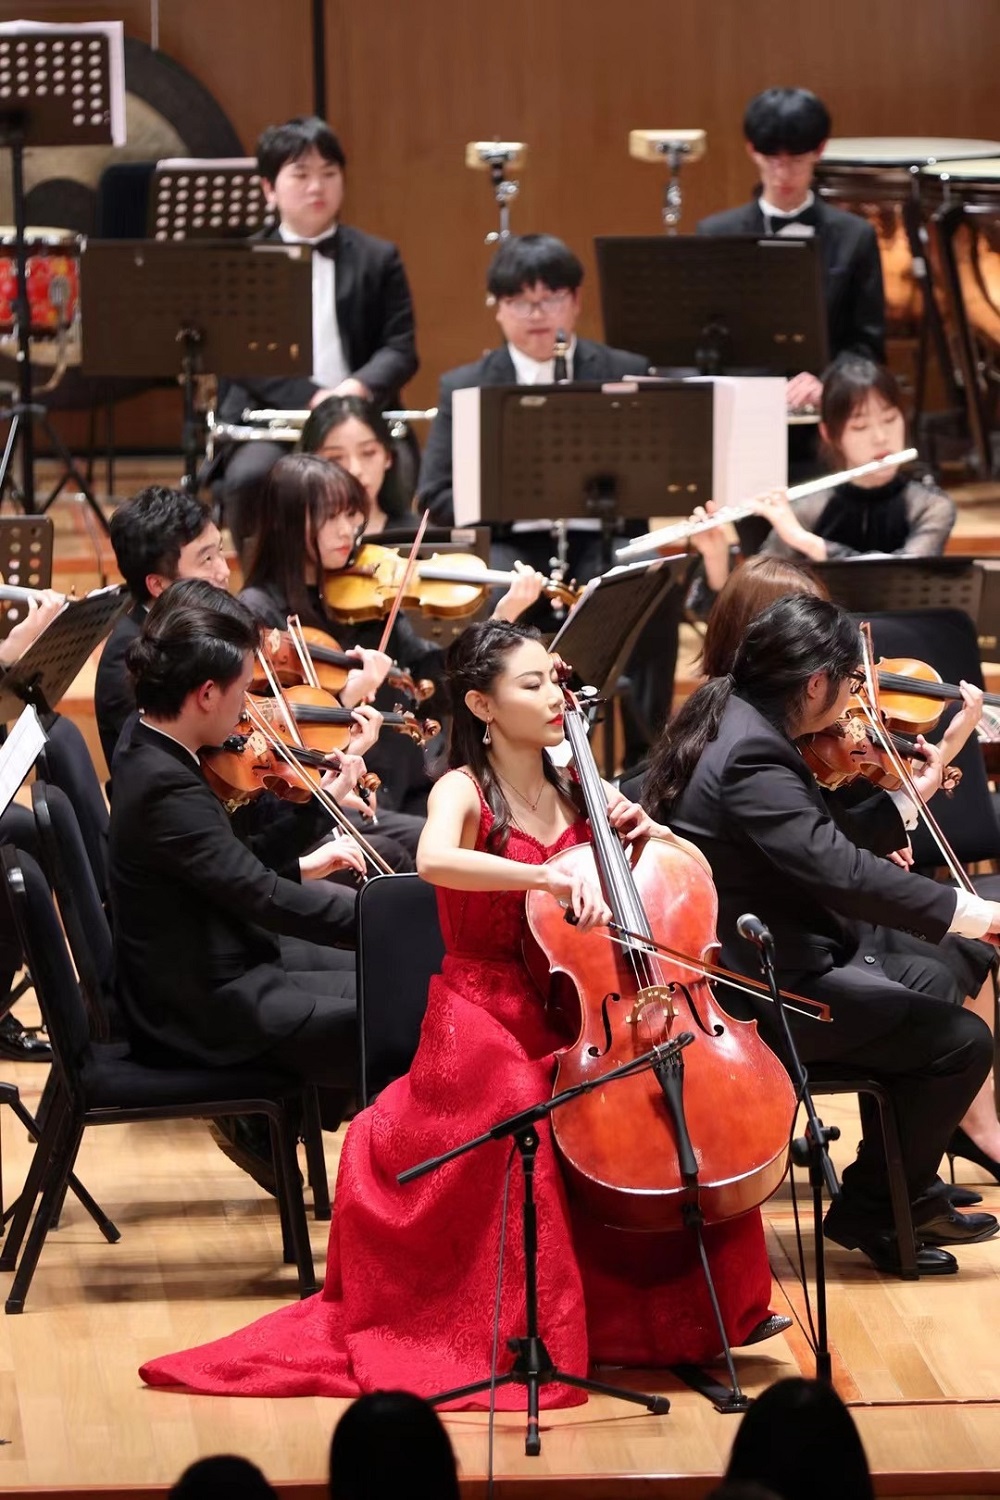 大提琴演奏家朱琳受邀演绎全新《红楼梦大提琴协奏曲》